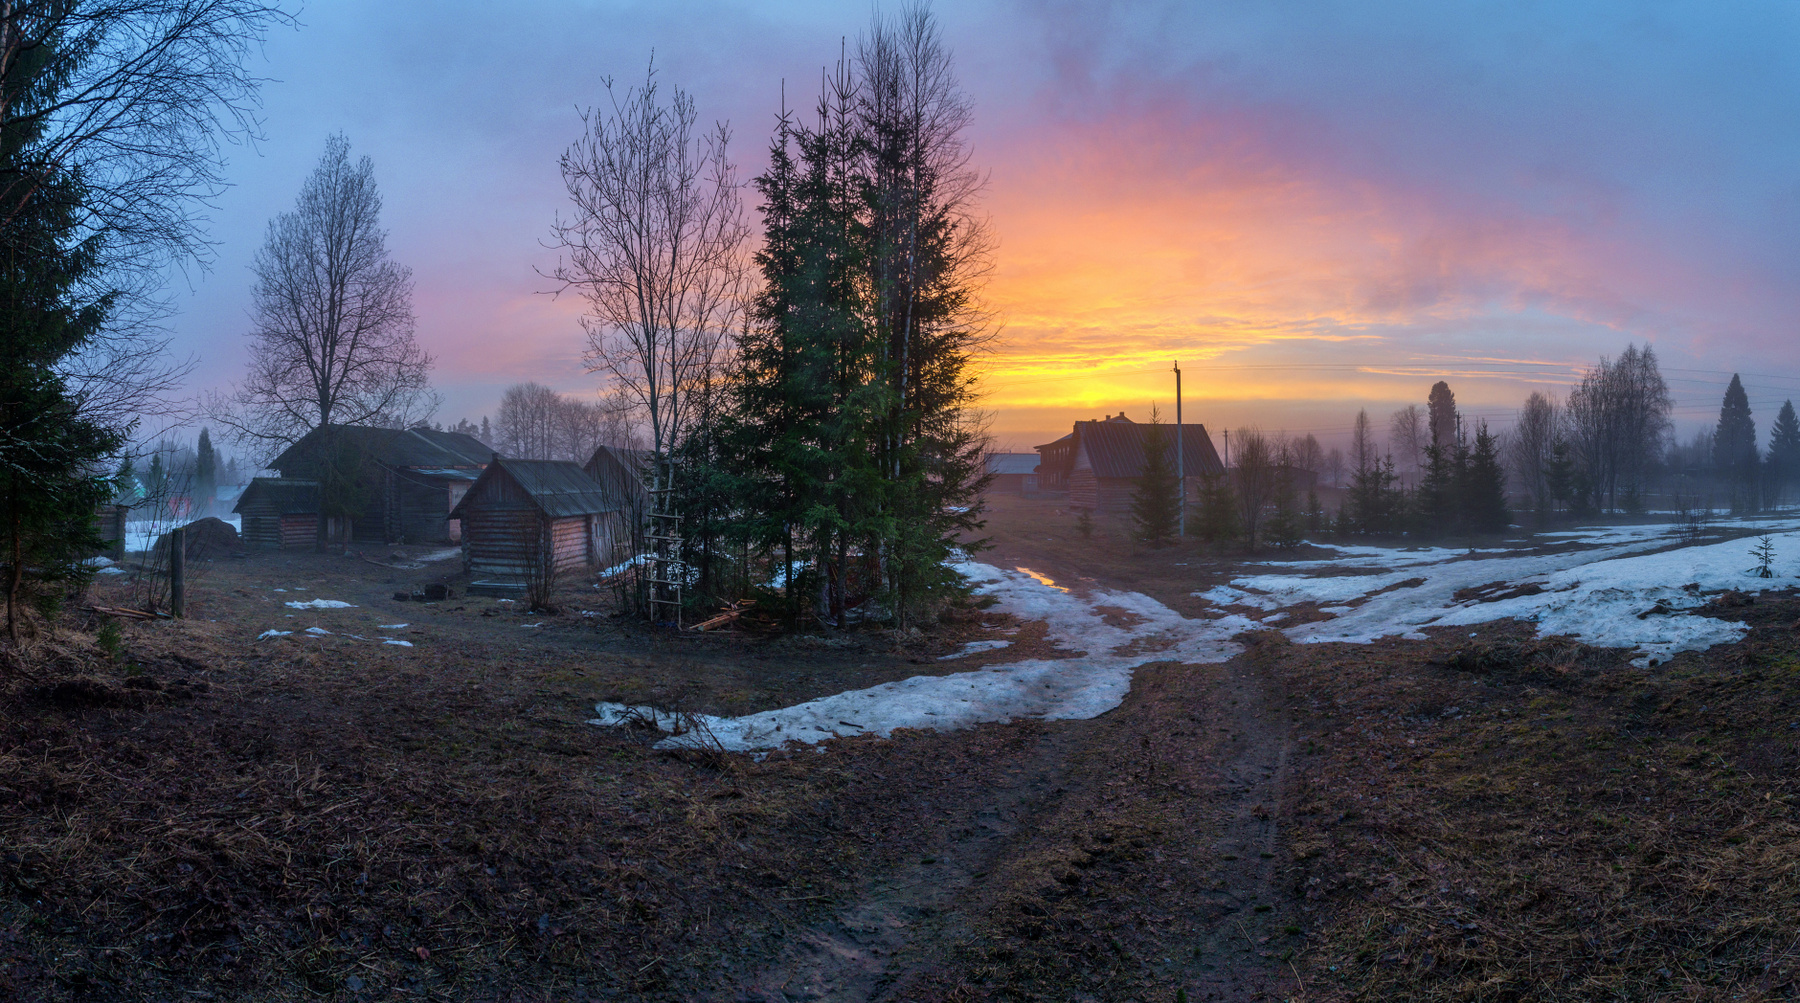 Вечер в деревне с небольшим туманом...04.05.2020. дер. Холдынка, Вологодская область, Вожегодский район. Вологодчина природа весна деревня